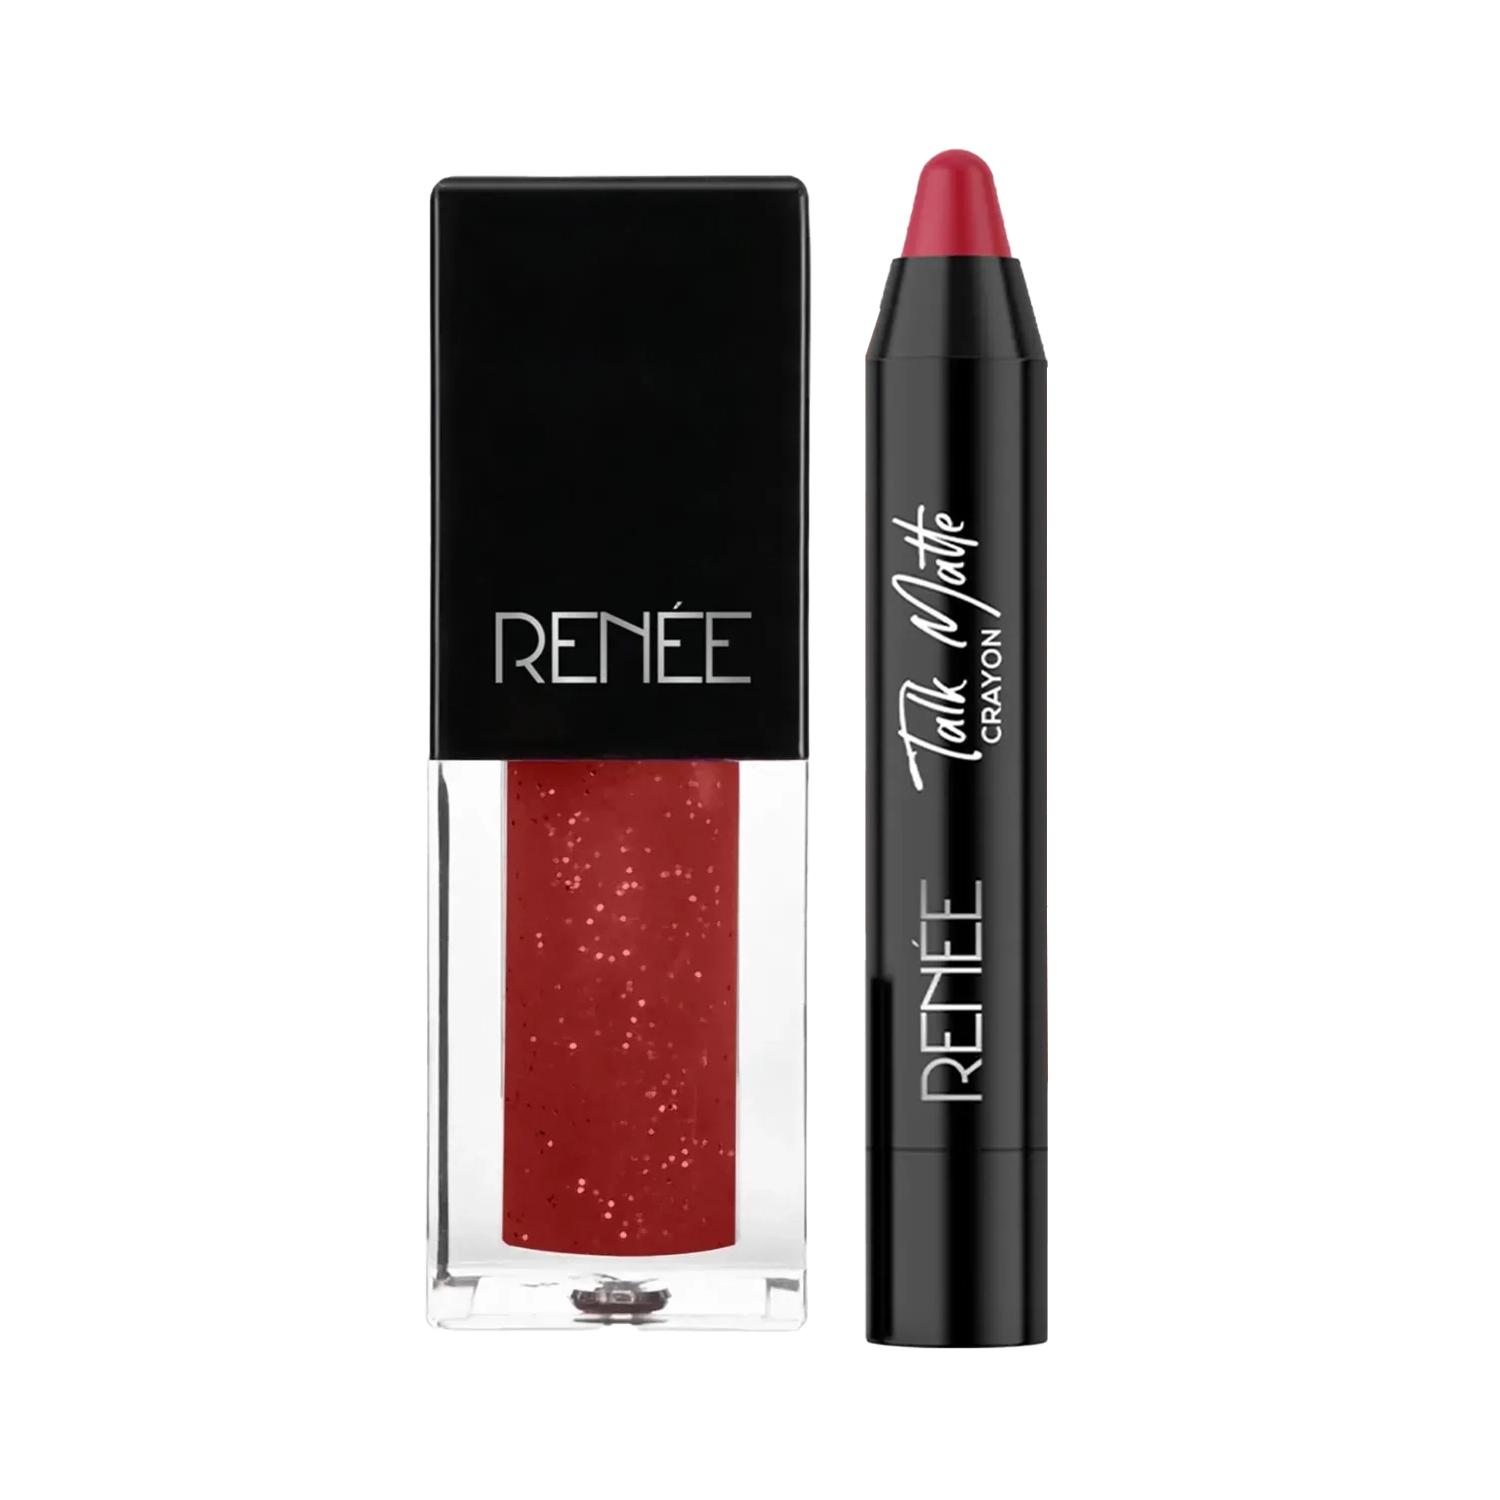 RENEE | RENEE Starlet Style Signature Makeup Pairing Combo - Lipstick + Lip Gloss